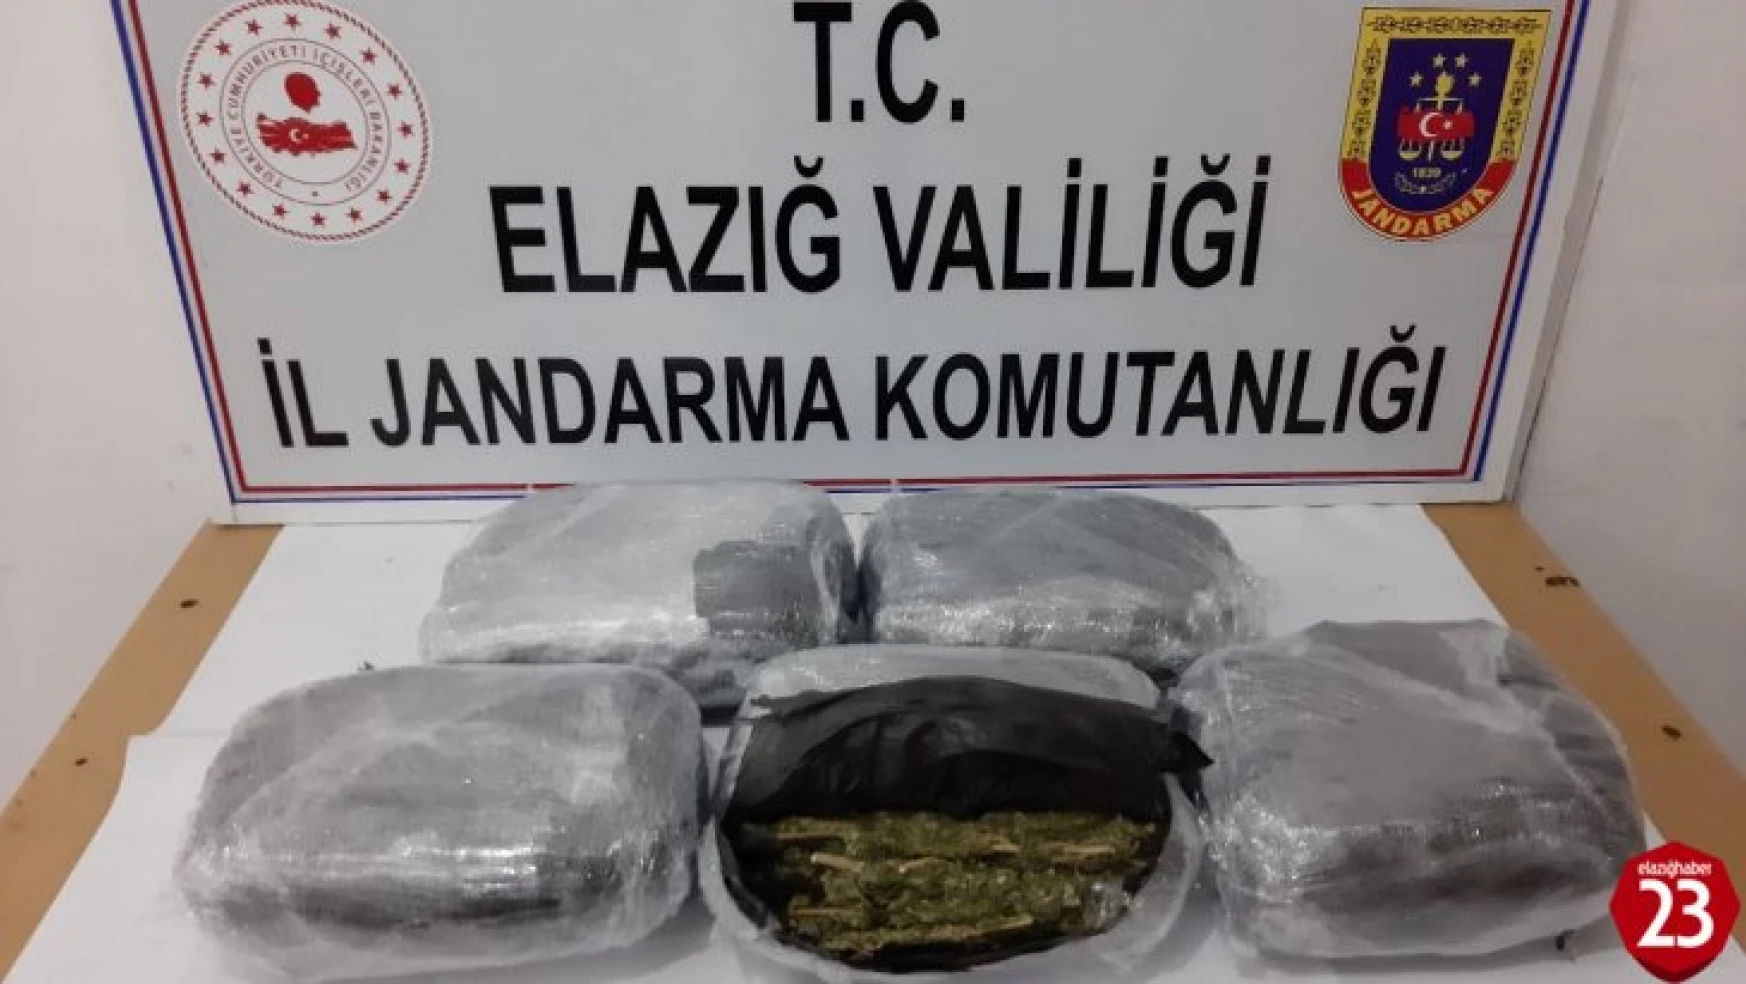 Ankara'ya gönderilen uyuşturucu Elazığ'da yakalandı